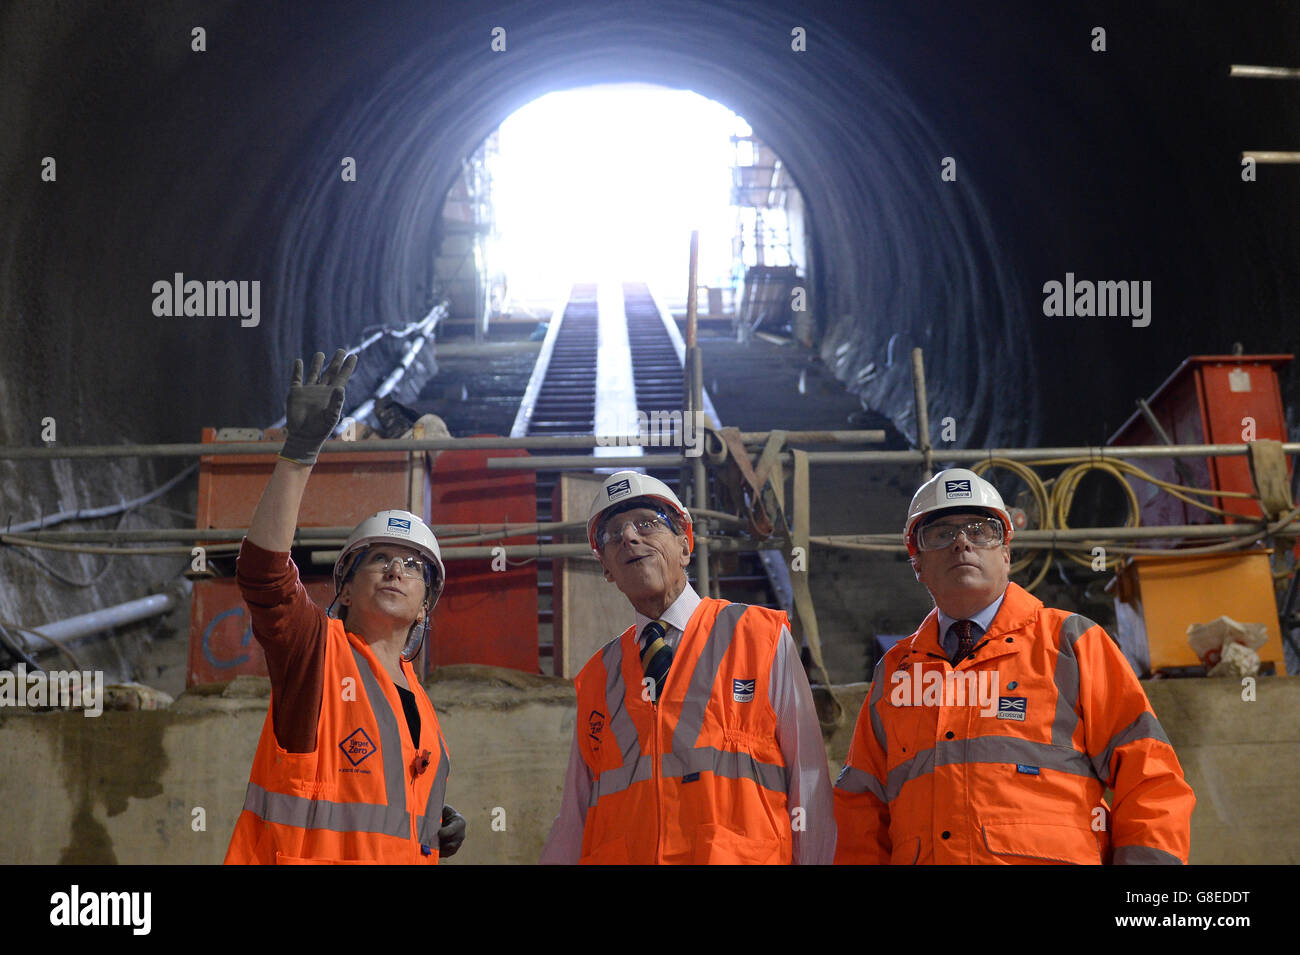 Il Duca di Edimburgo è rappresentato da una scala mobile nella nuova stazione Crossrail che prende forma a 30 metri sotto Farringdon a Londra da Andrew Wolstenholme, Chief Executive di Crossrail (a destra) e Linda Miller, Project Manager. Foto Stock